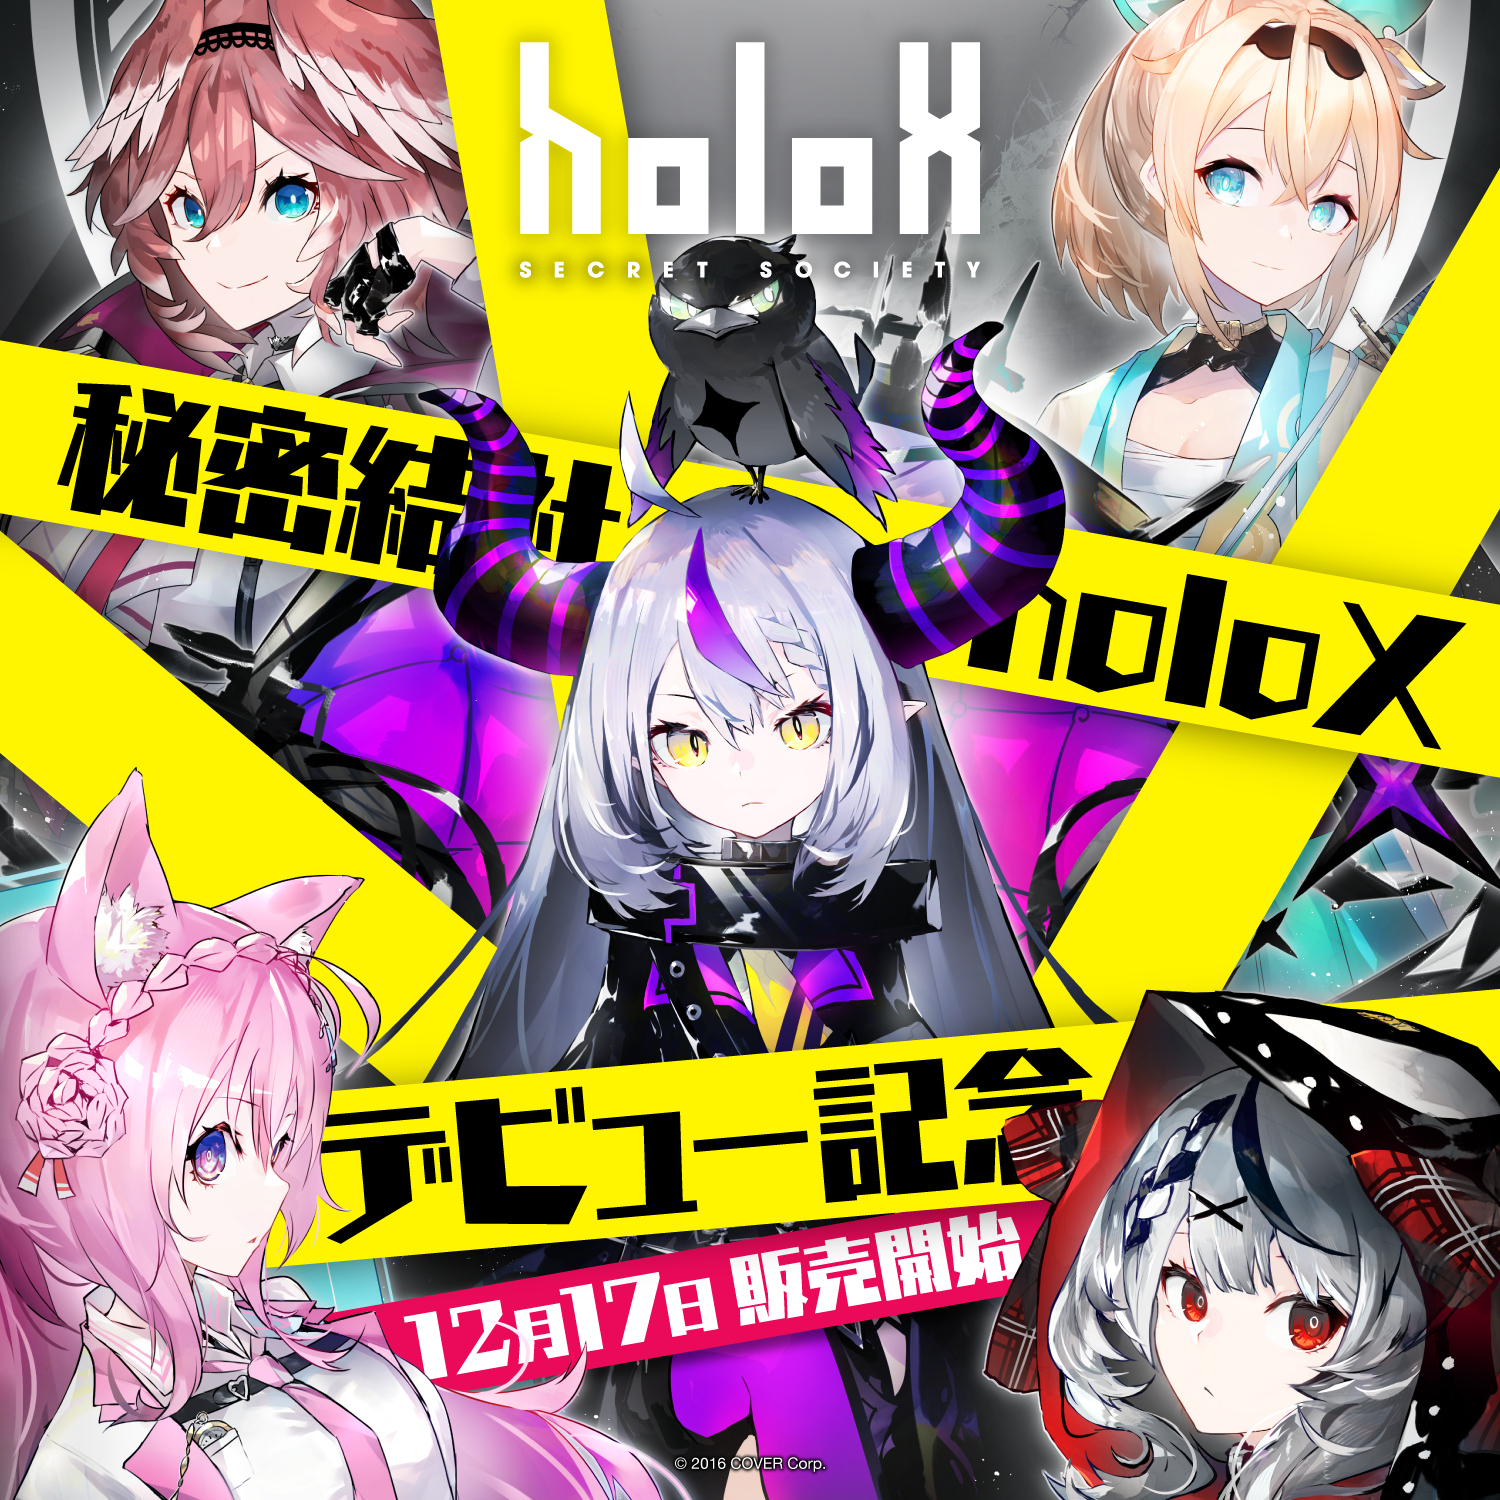 ホロライブ 秘密結社holoX 1周年記念 holoXer 専用パーカー - アイドル